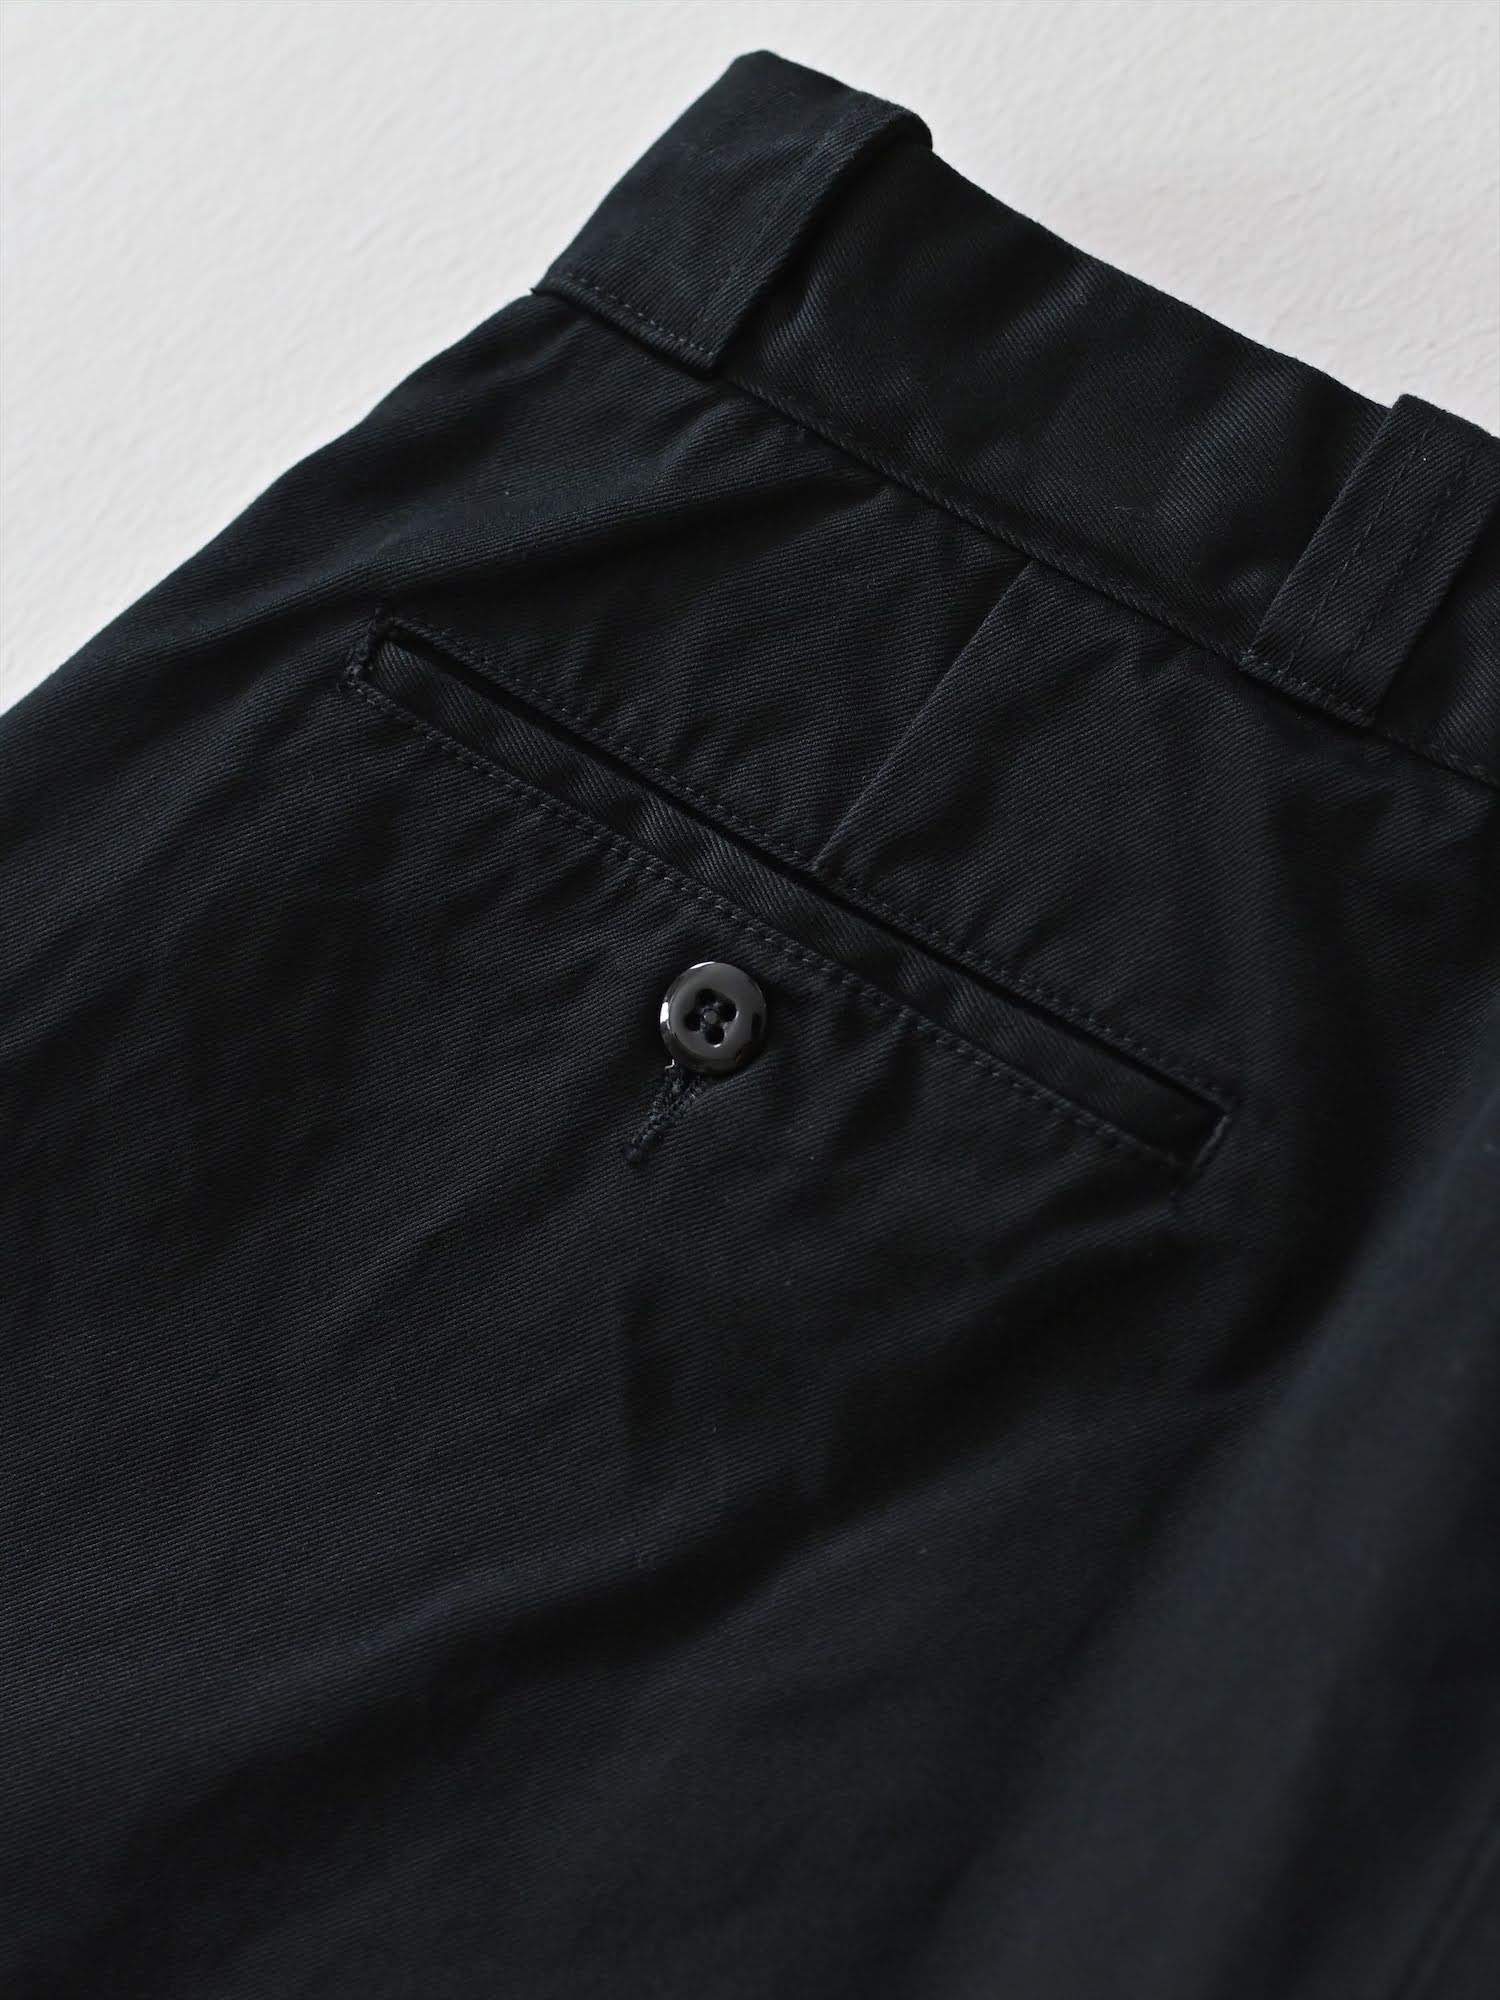 Work Chino Pants　black / pand catalogue